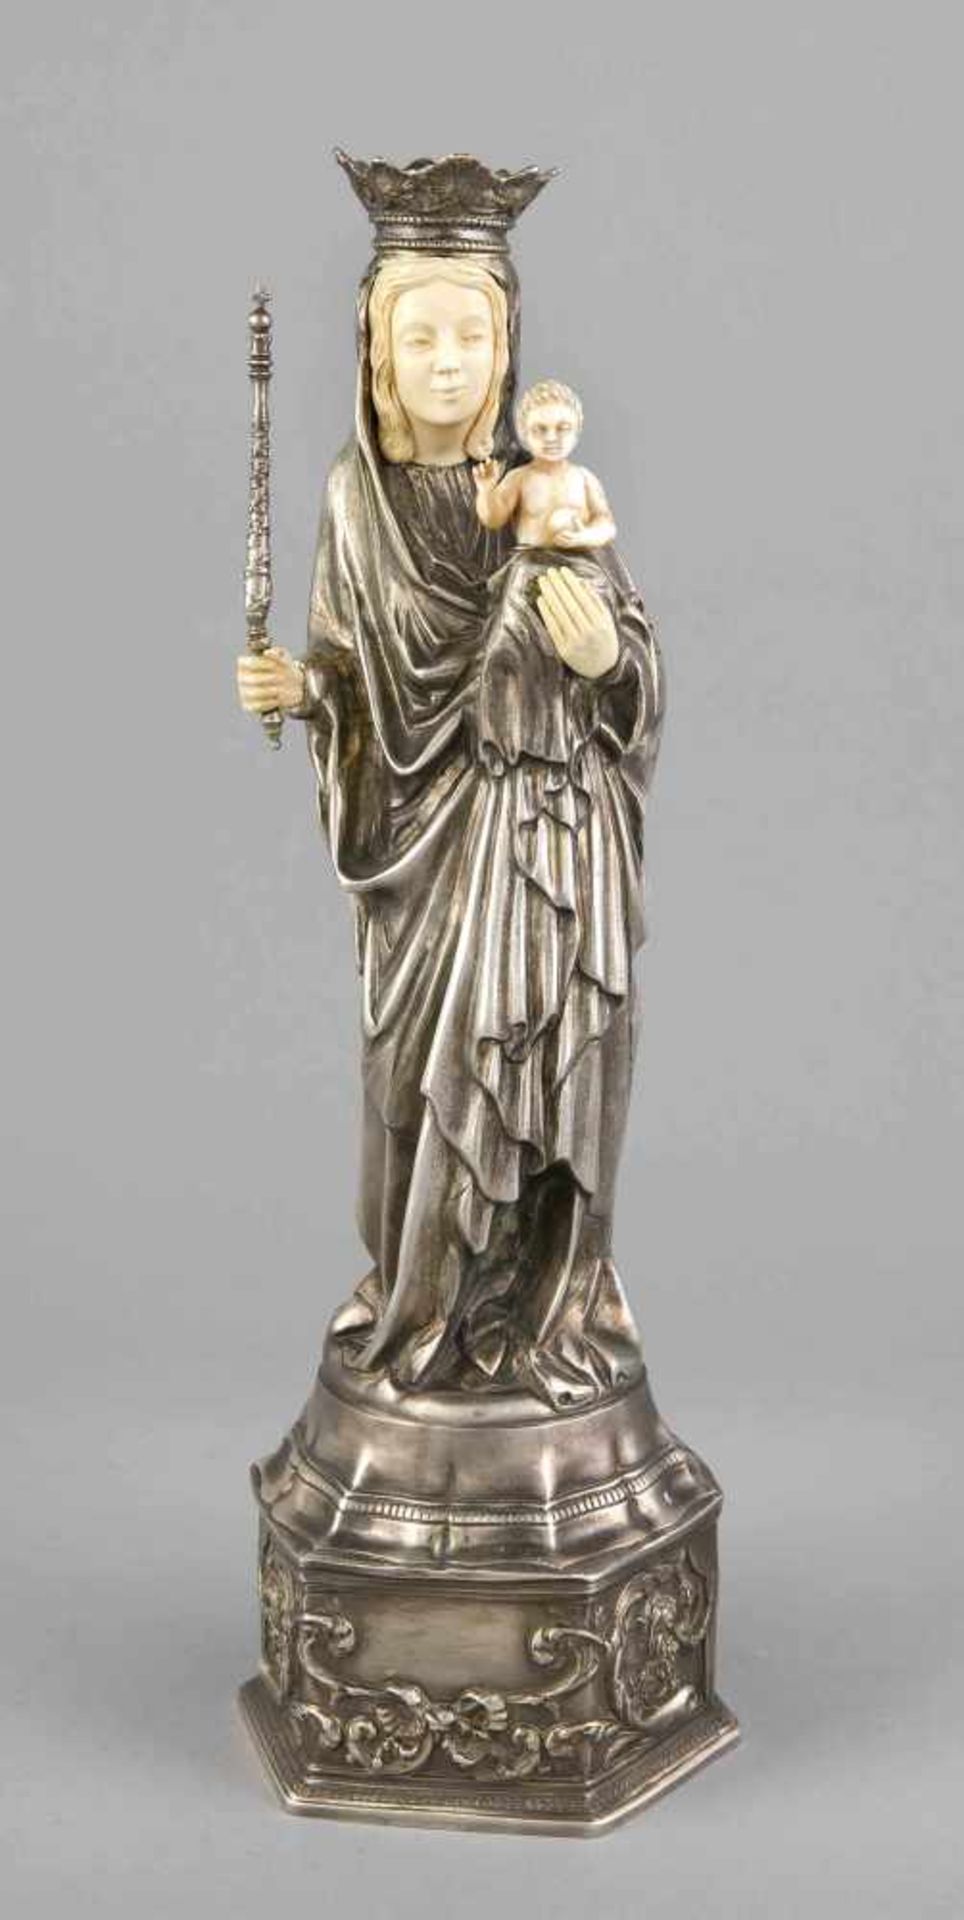 Historismus-Madonna mit Elfenbeineinlagen, Deutsch, um 1900, Silber 800/000, gotisierende Form,